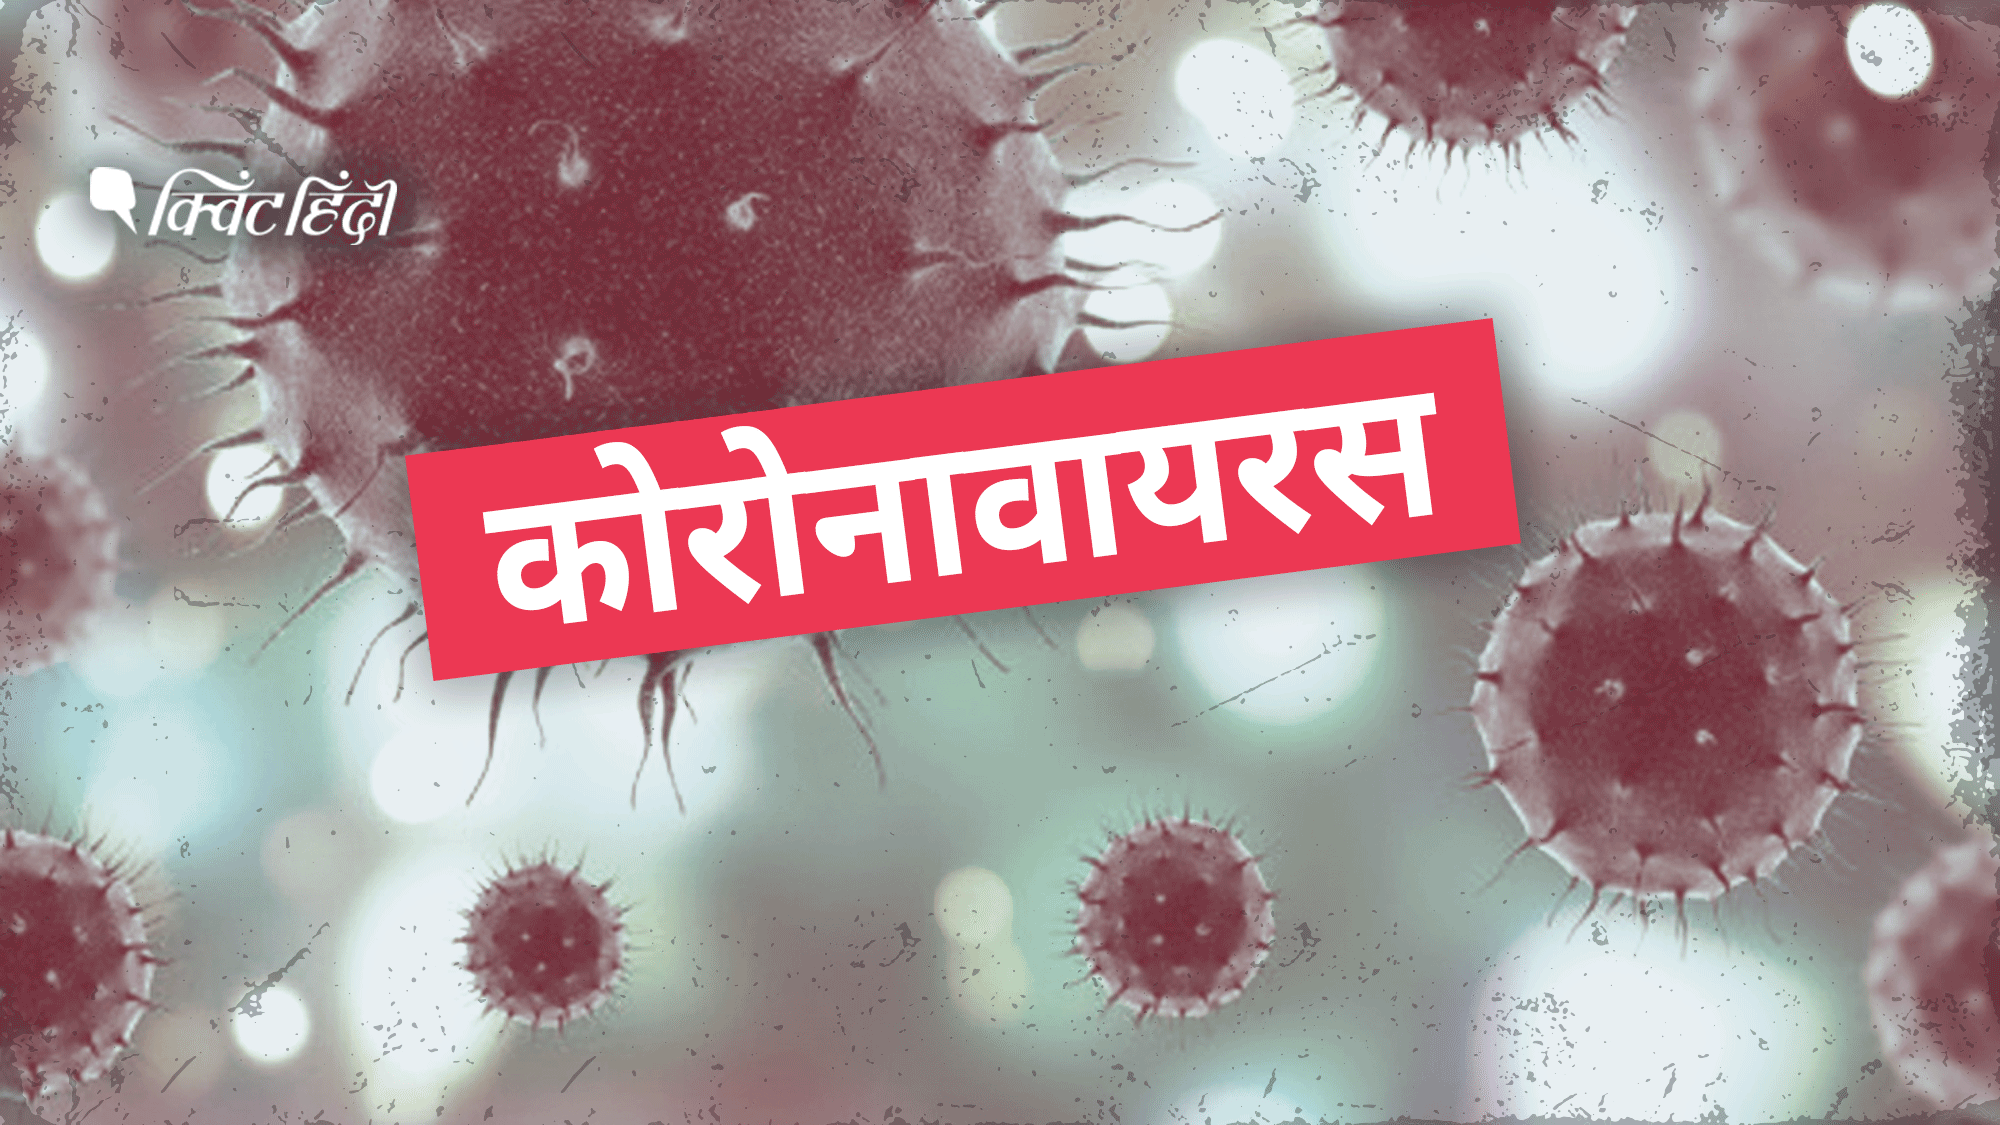 कोरोनावायरस की वजह से दुनियाभर में 11,000 से ज्यादा मौत